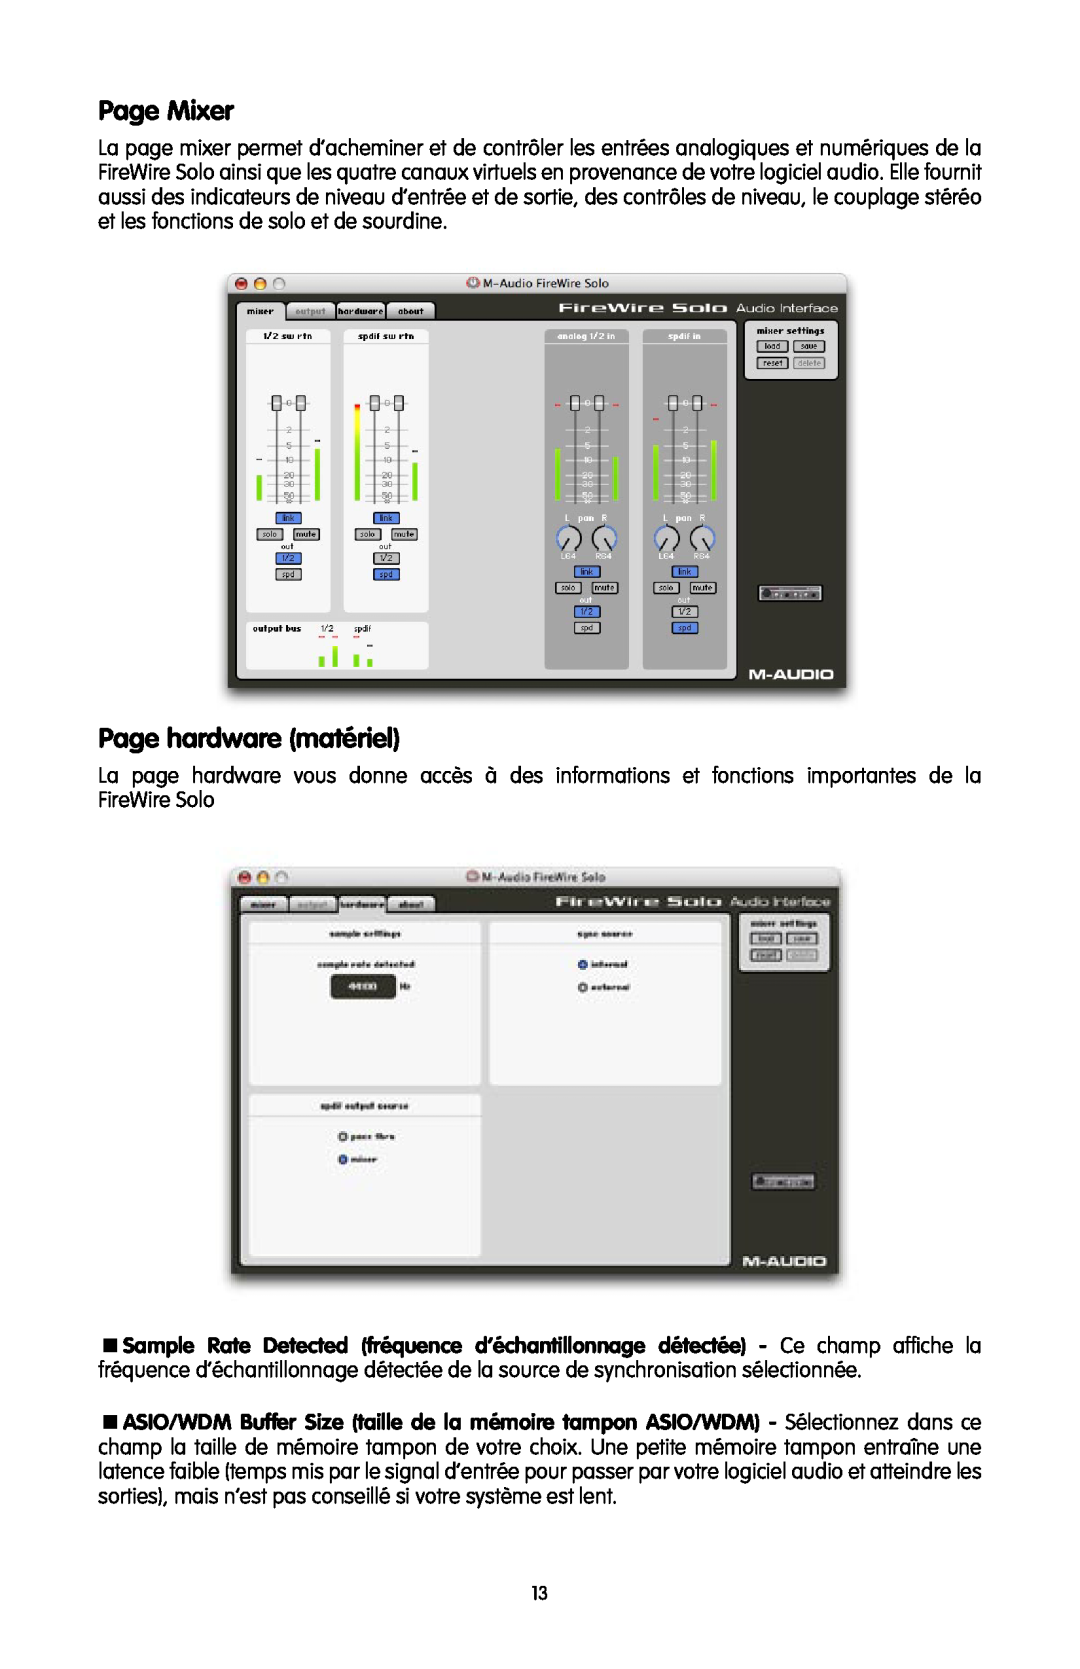 M-Audio FireWire SOLO quick start Page Mixer, Page hardware matériel 